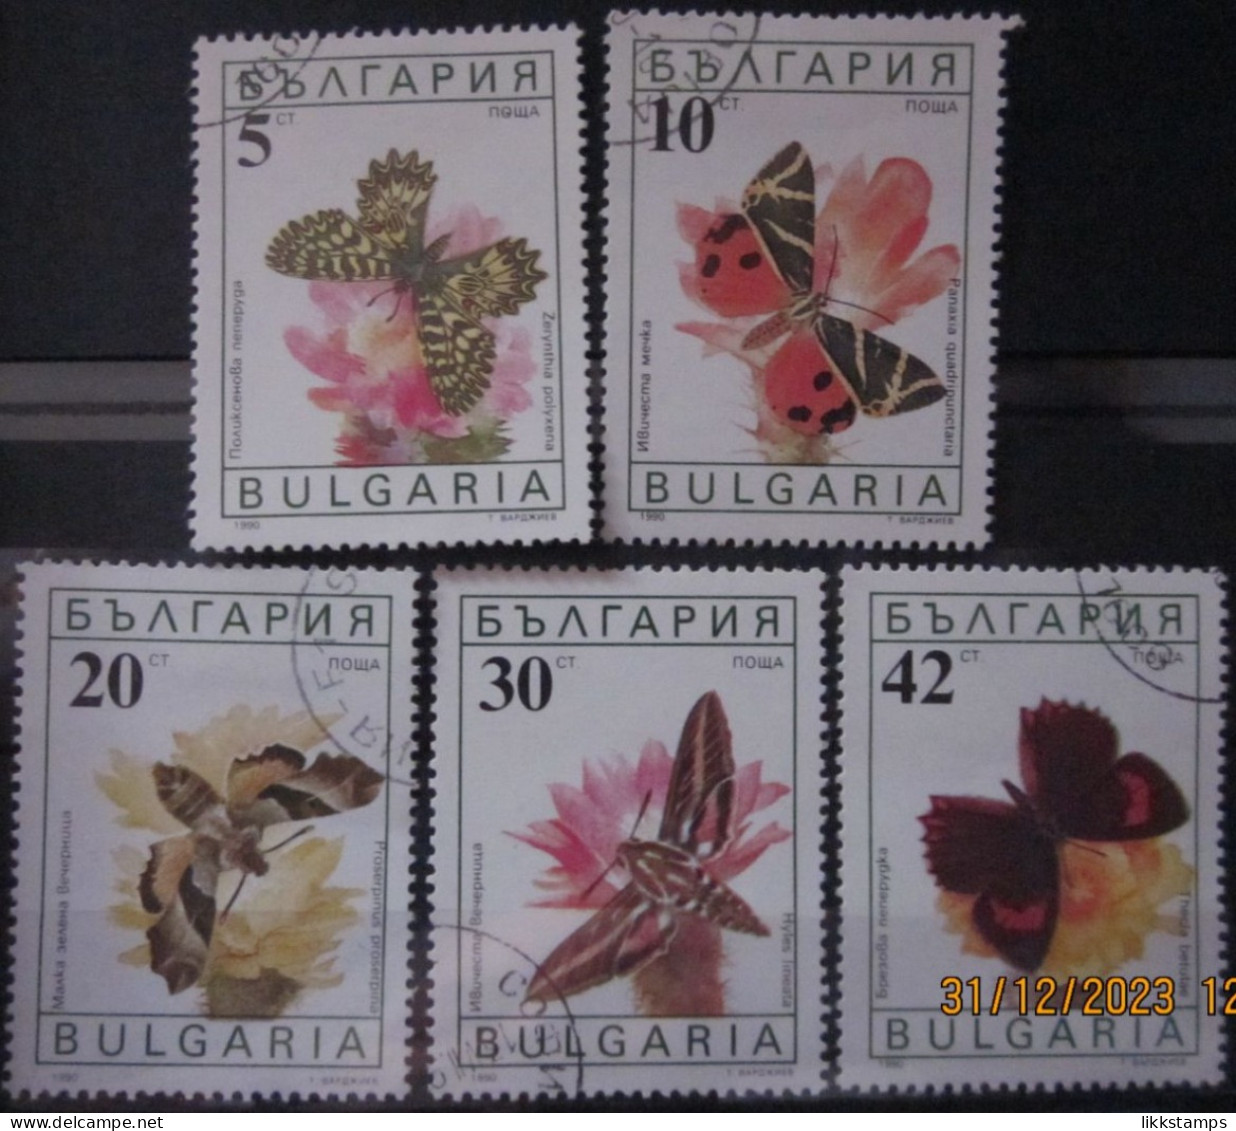 BULGARIA 1990 ~ S.G. 3699 - 3703, ~ BUTTERFLIES AND MOTHS. ~  VFU #02913 - Usati